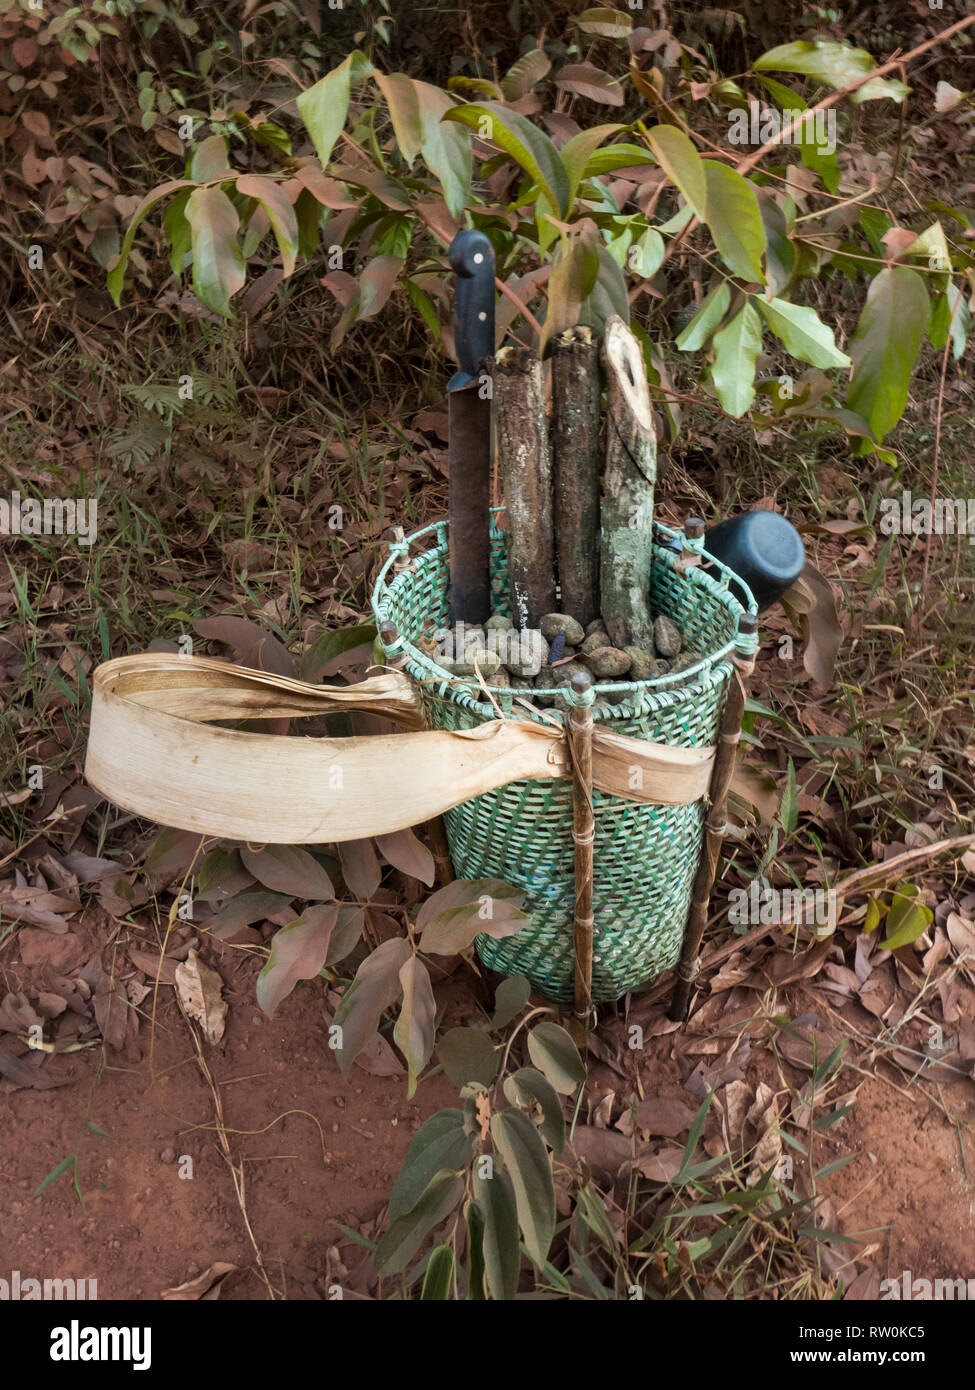 El estado de Mato Grosso, Brasil. Un tradicional diseño Kayapo canasta, pero hecha de plástico vinculante, la cinta está en el piso de la selva con Cumaru (Dipterix odorata, Tonka frijoles) y cortar trozos de vid medicinales de la selva. Foto de stock